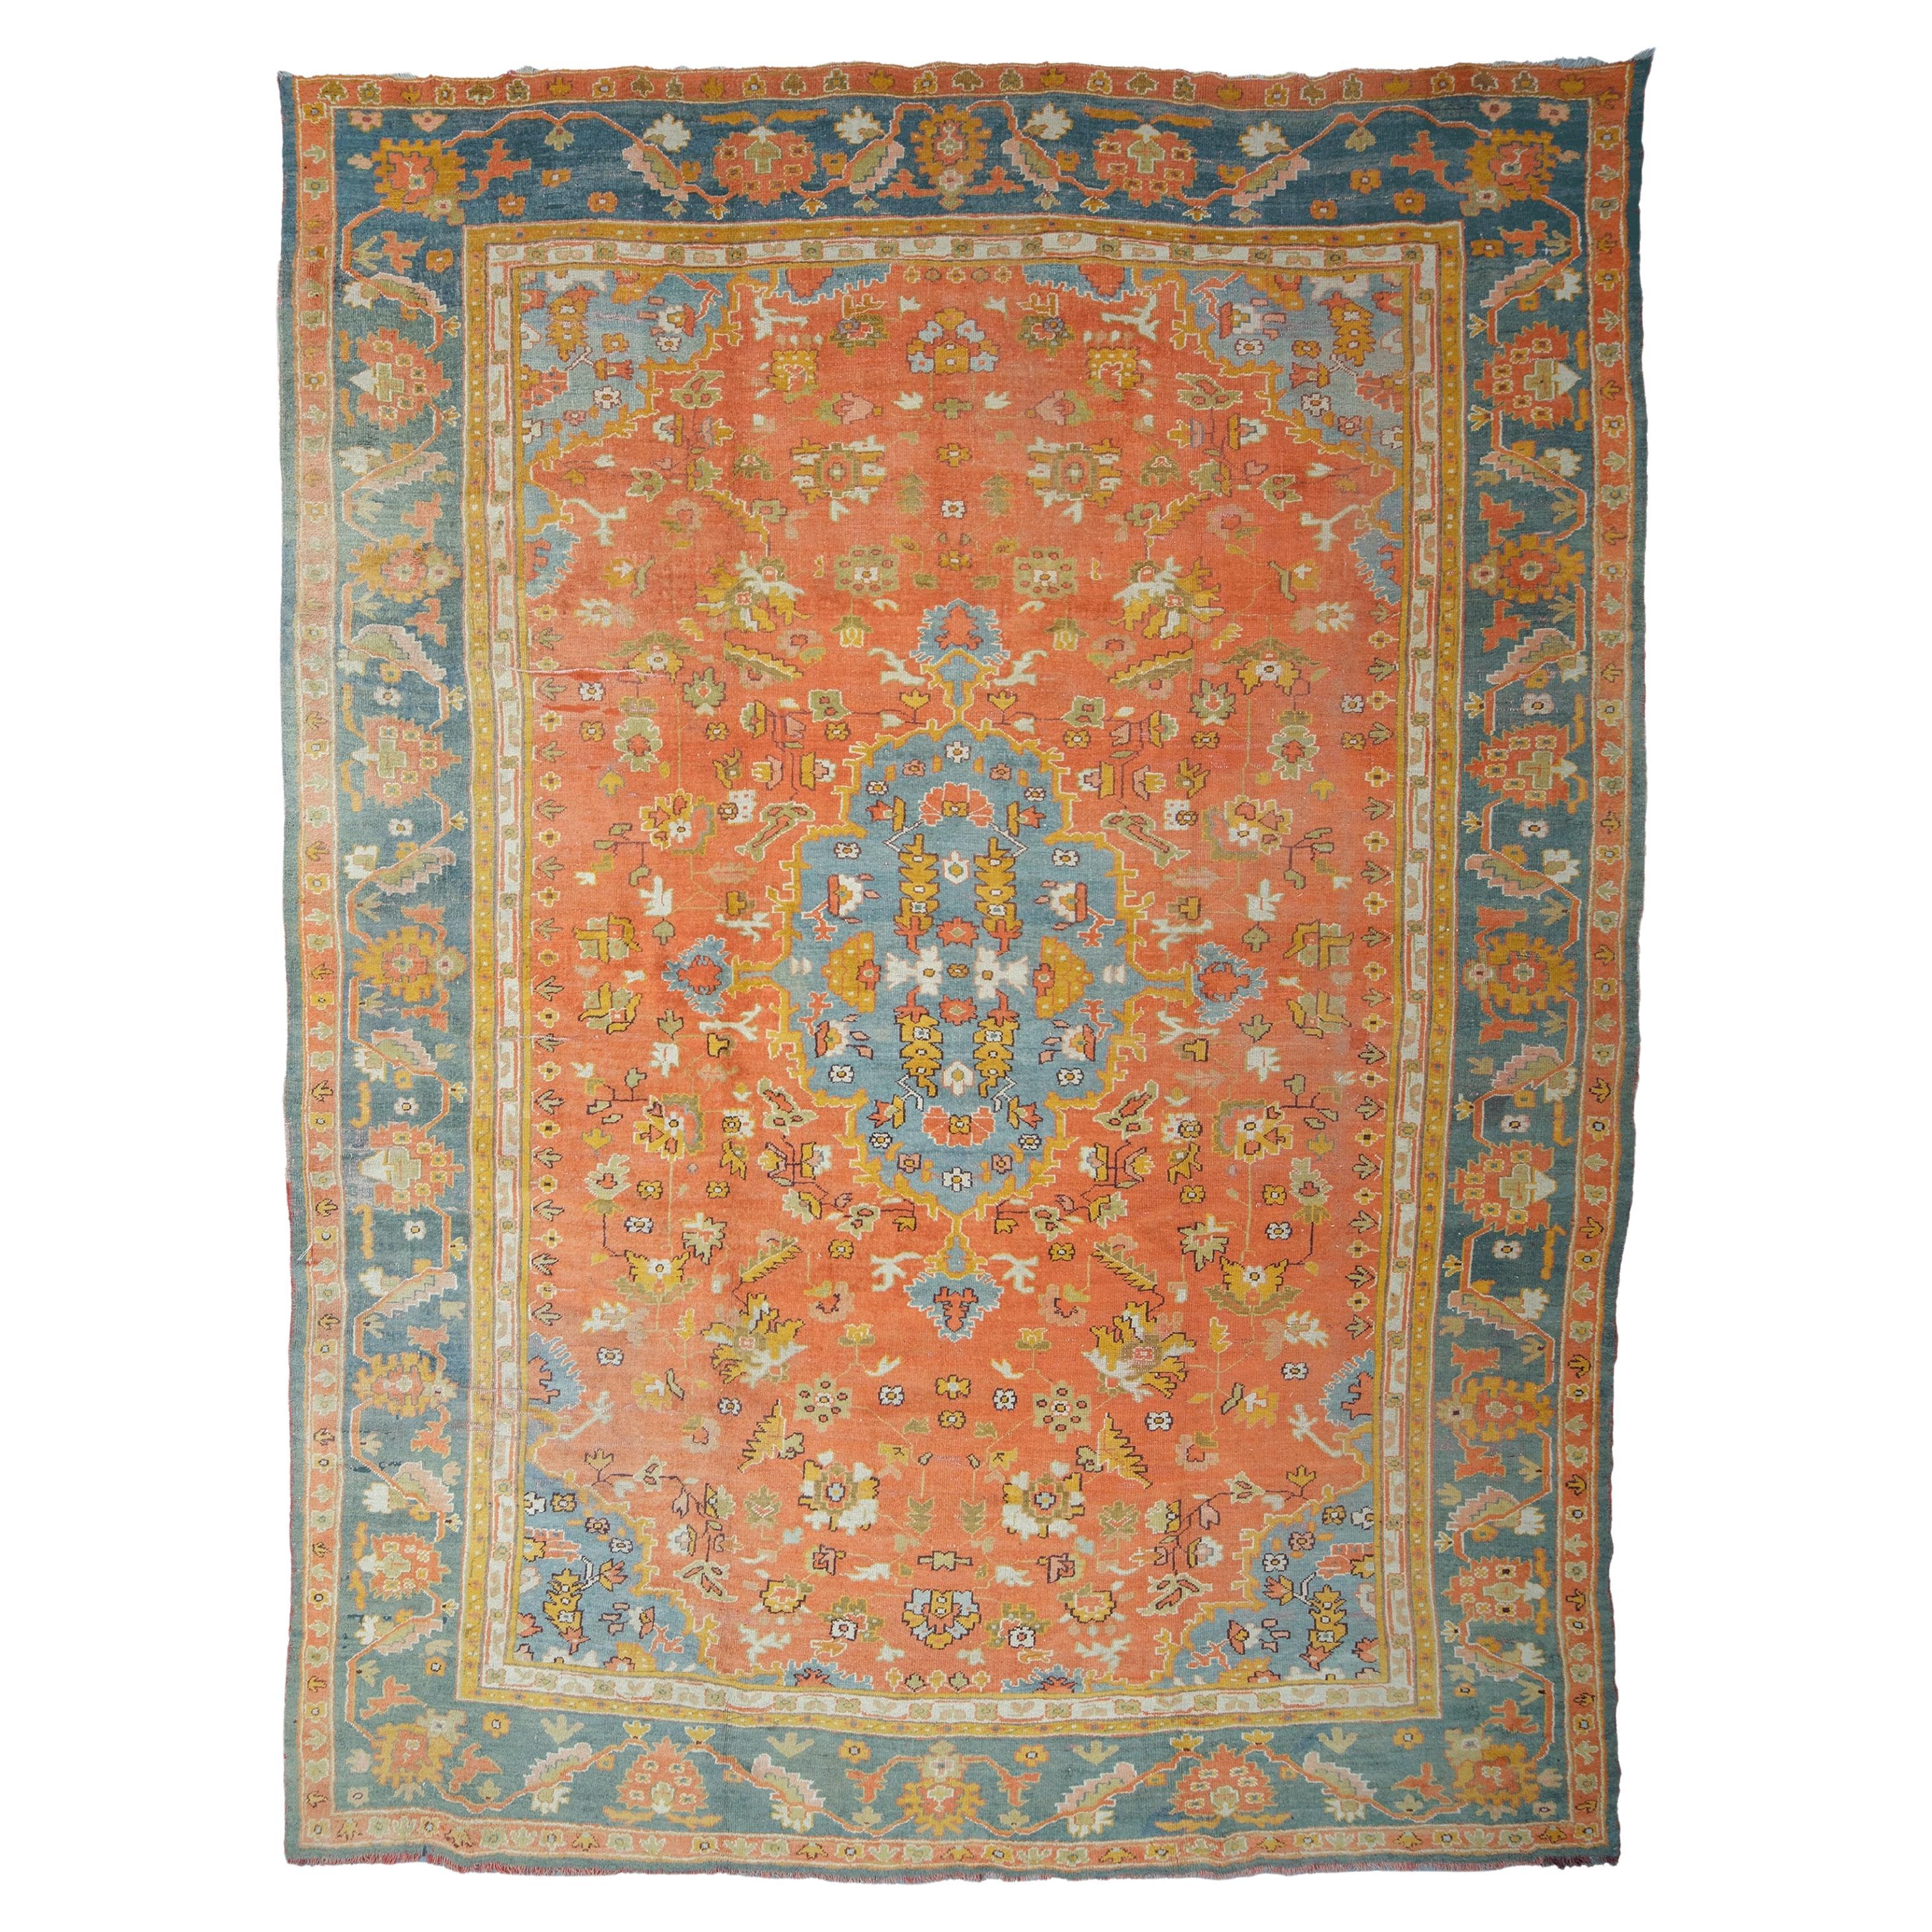 Antique Ushak Carpet - Late of 19th Century Ushak Rug, Antique Rug, Turkish Rug